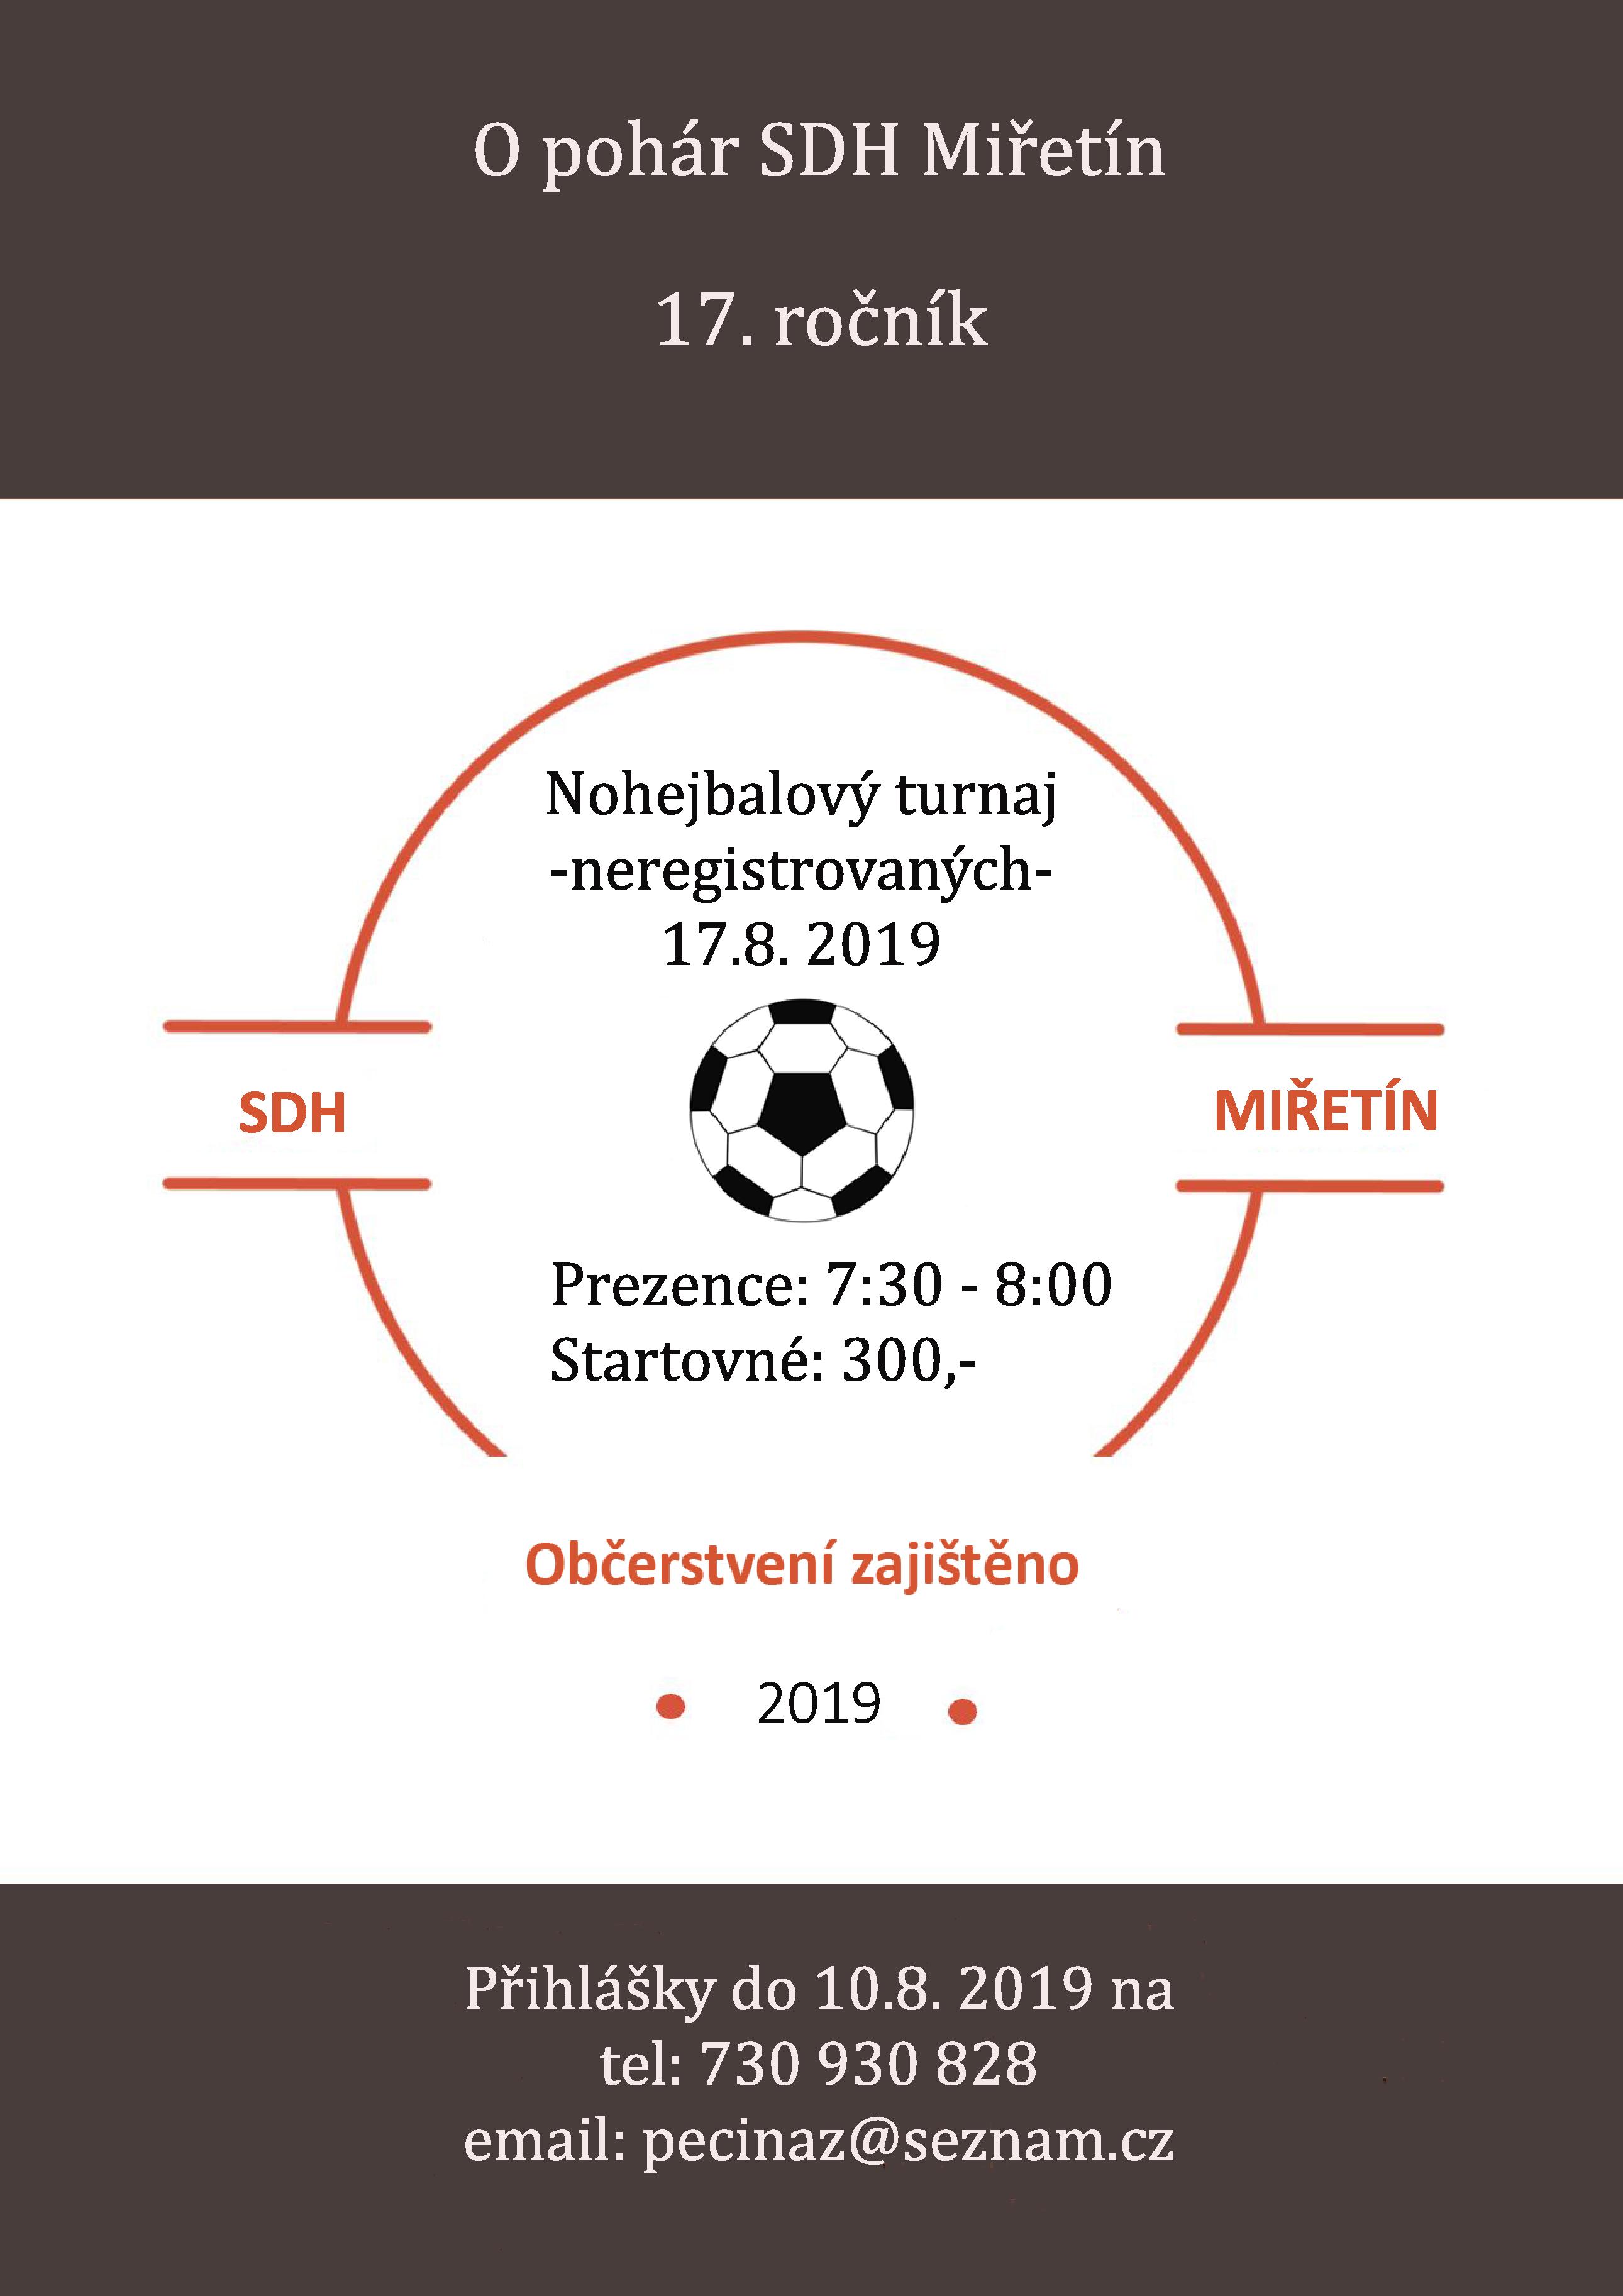 Nohejbalový turnaj "O pohár SDH Miřetín"